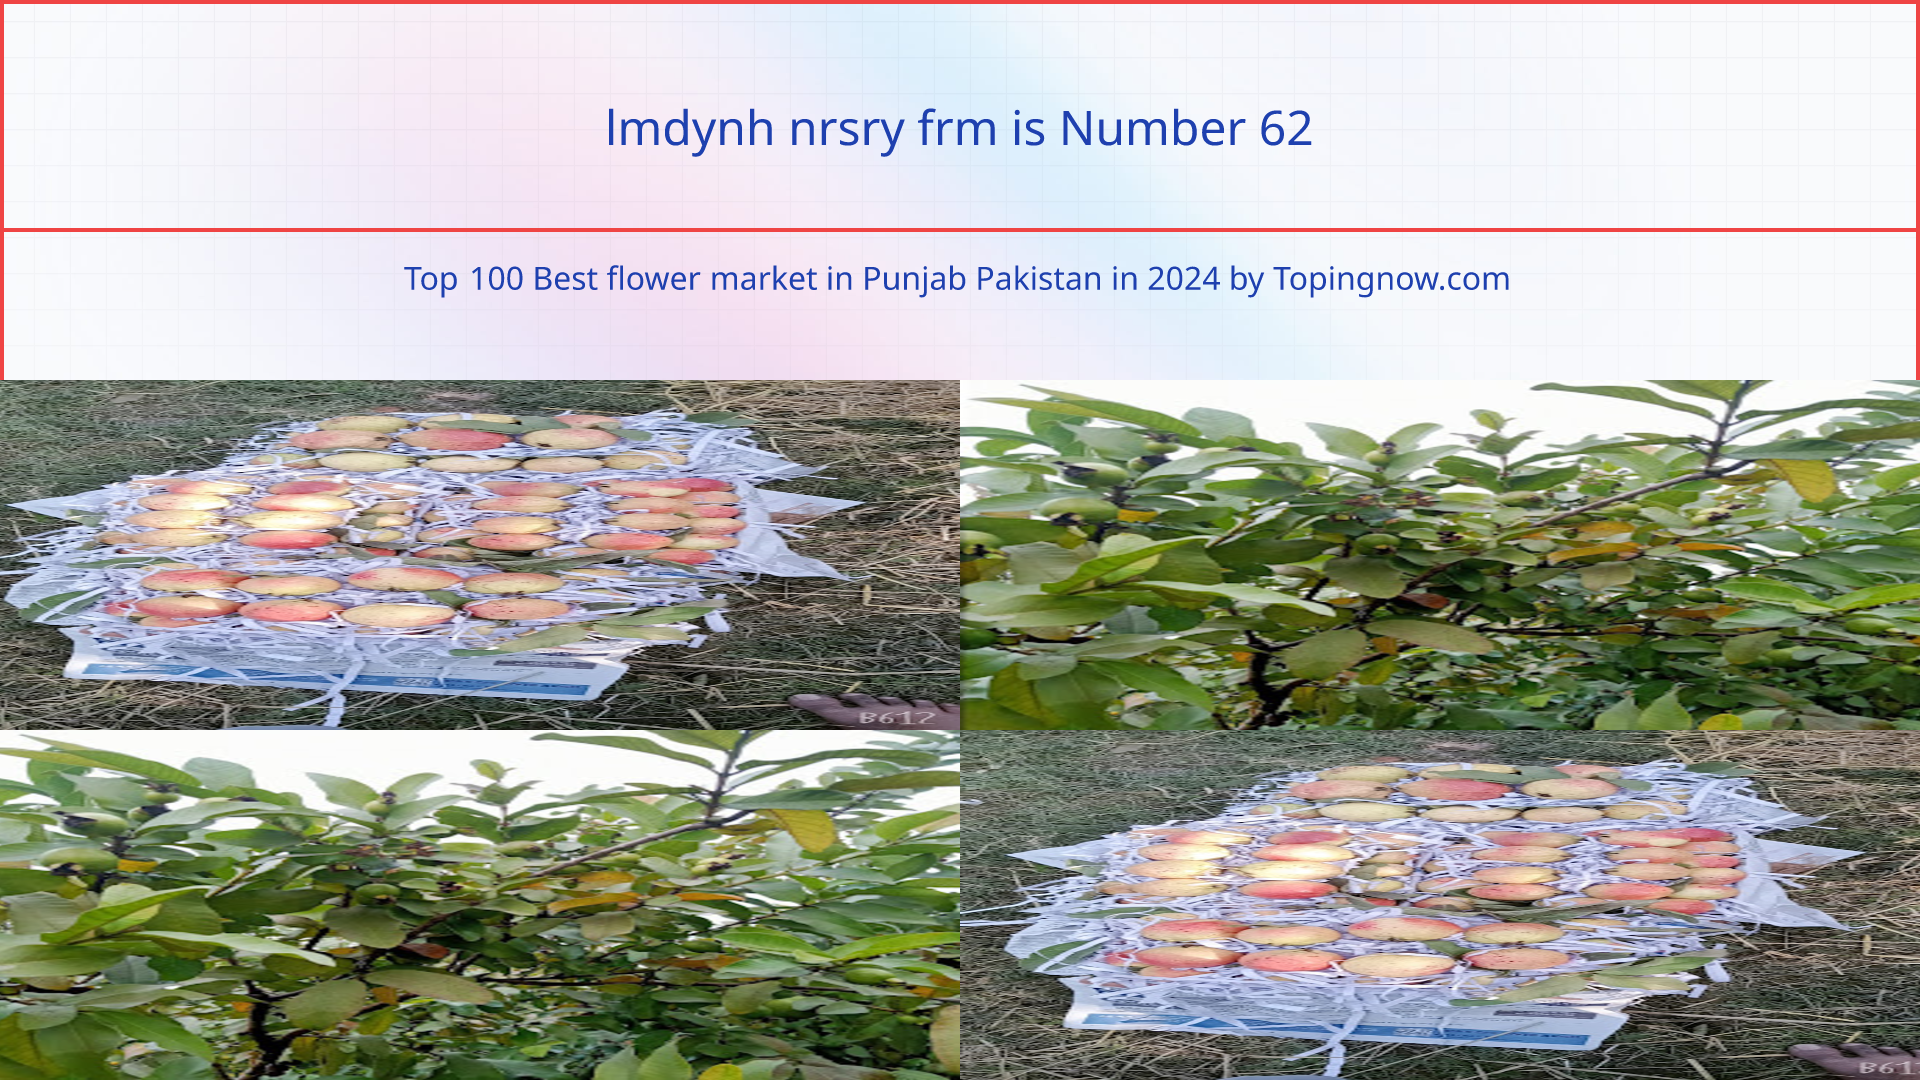 lmdynh nrsry frm: Top 100 Best flower market in Punjab Pakistan in 2024